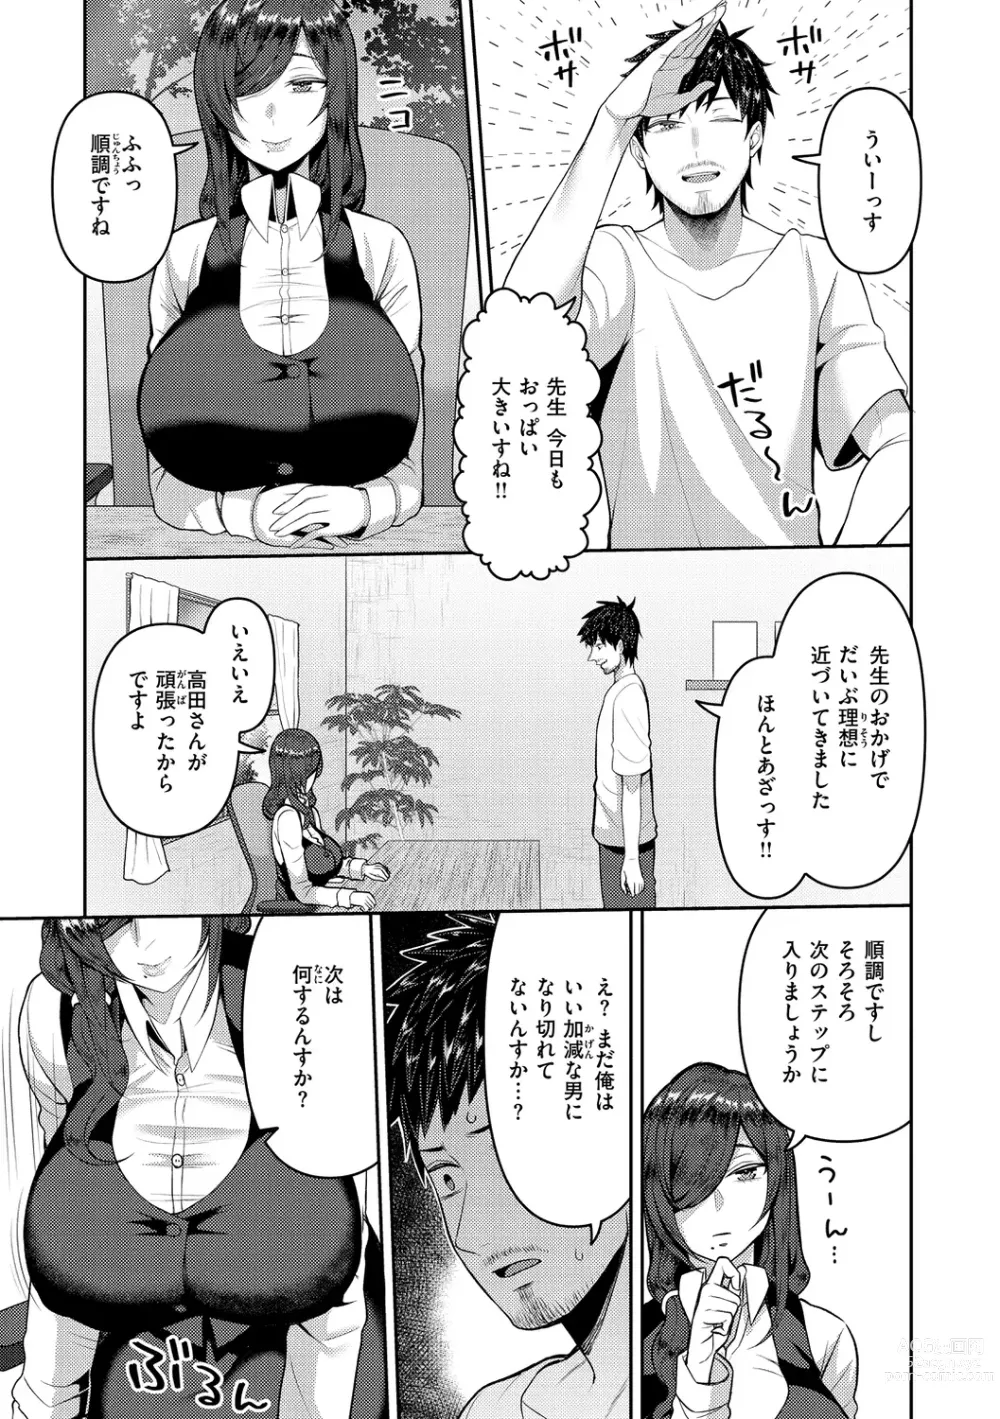 Page 29 of manga Amaete Hoshii no - I want you to spoil me